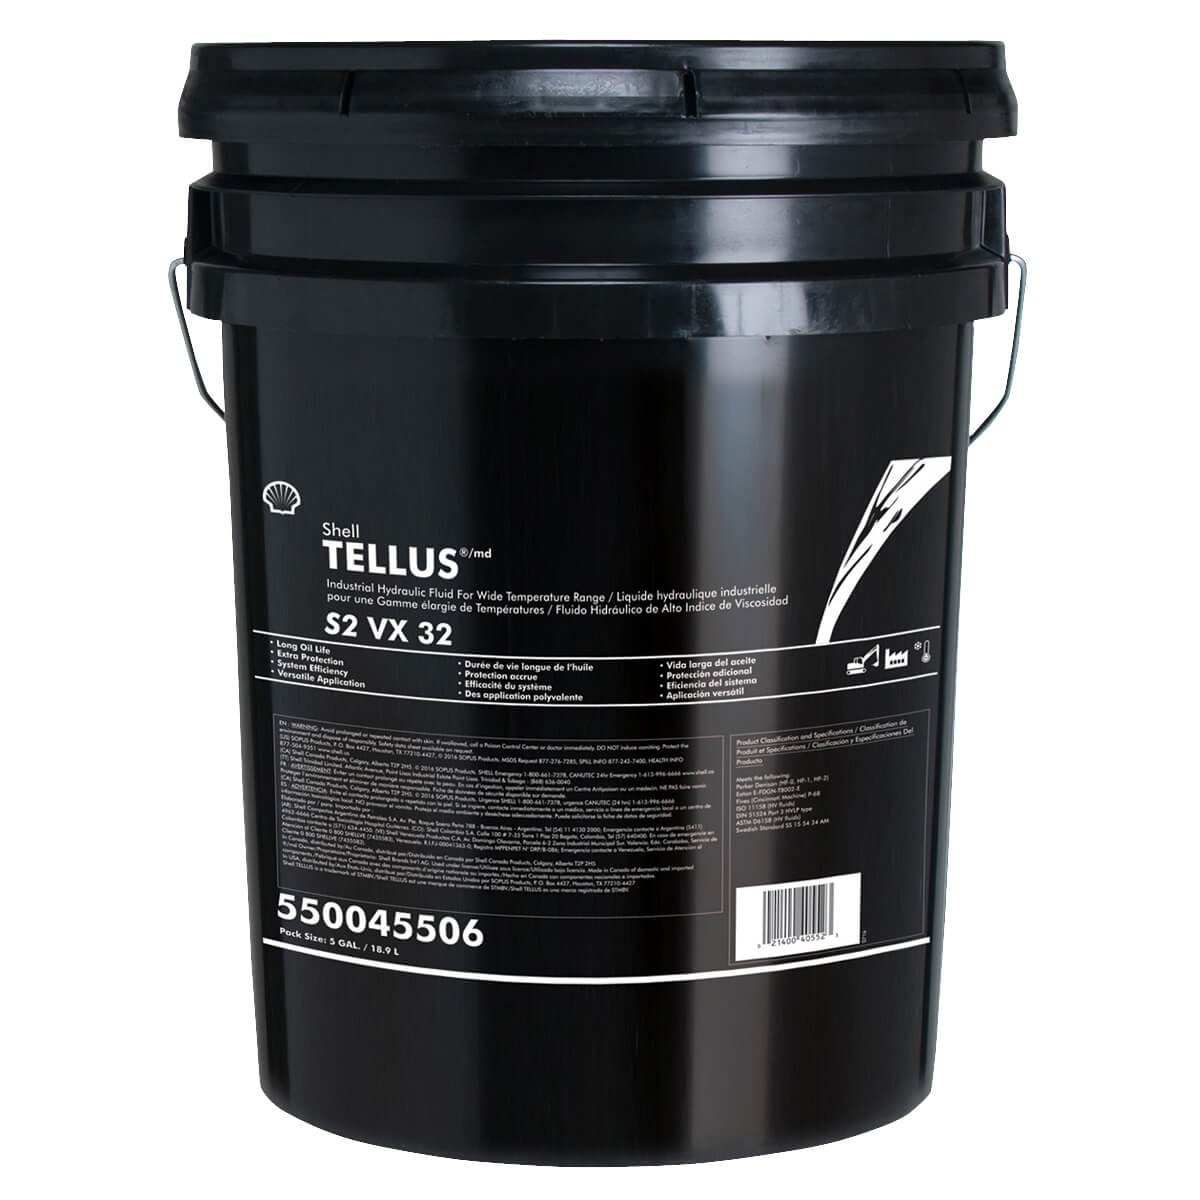 Shell Tellus S2 VX 32 - 18.9 L